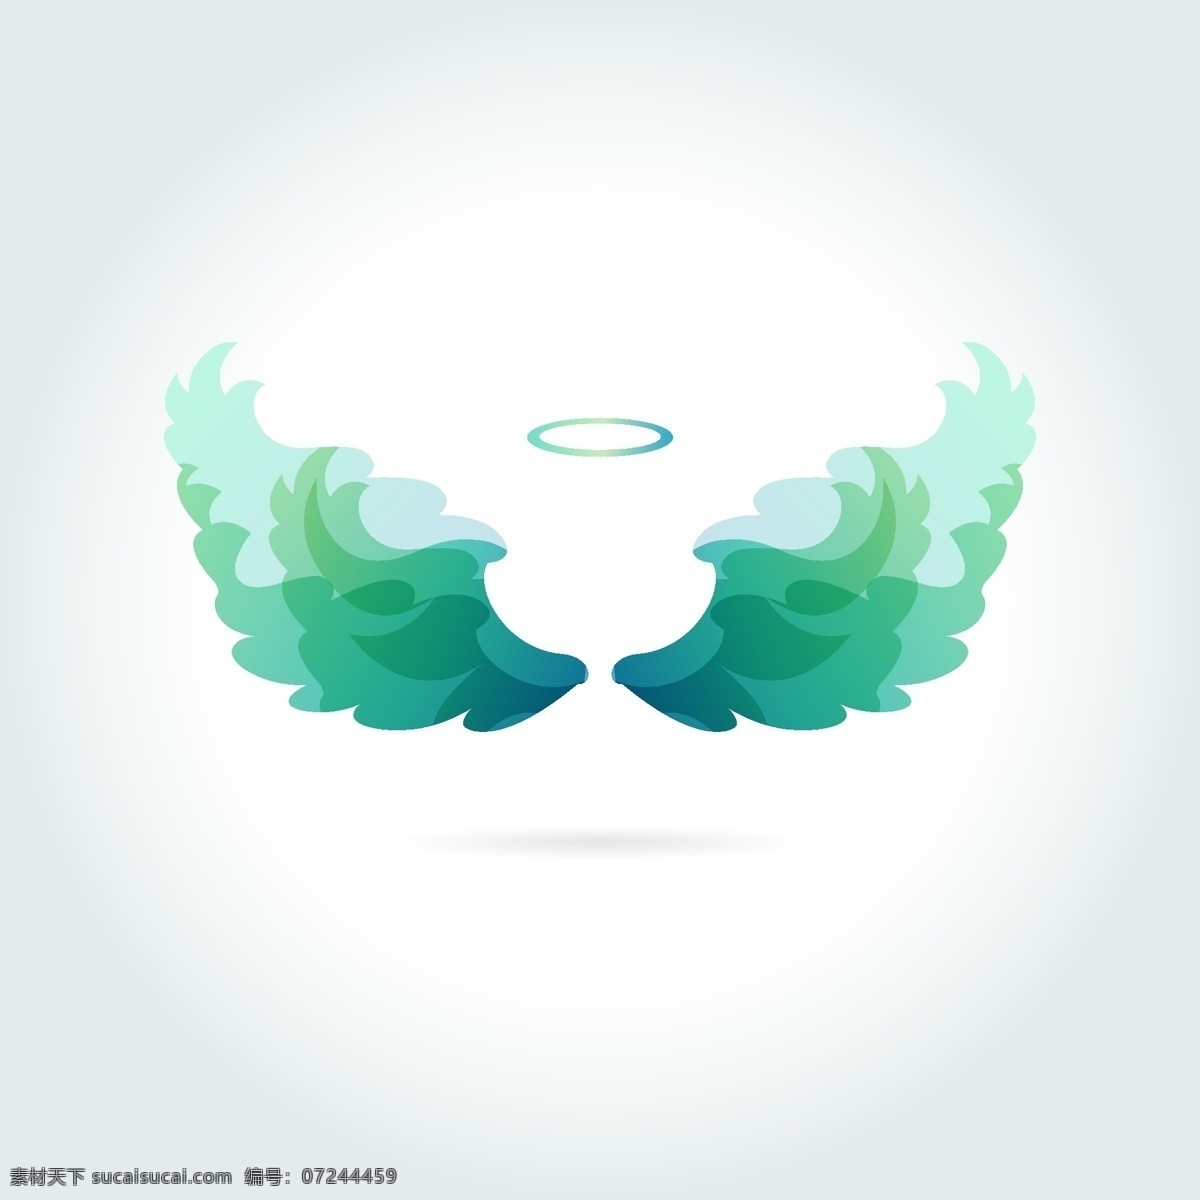 矢量素材 绿色 天使 光环 翅膀 平面设计 白色